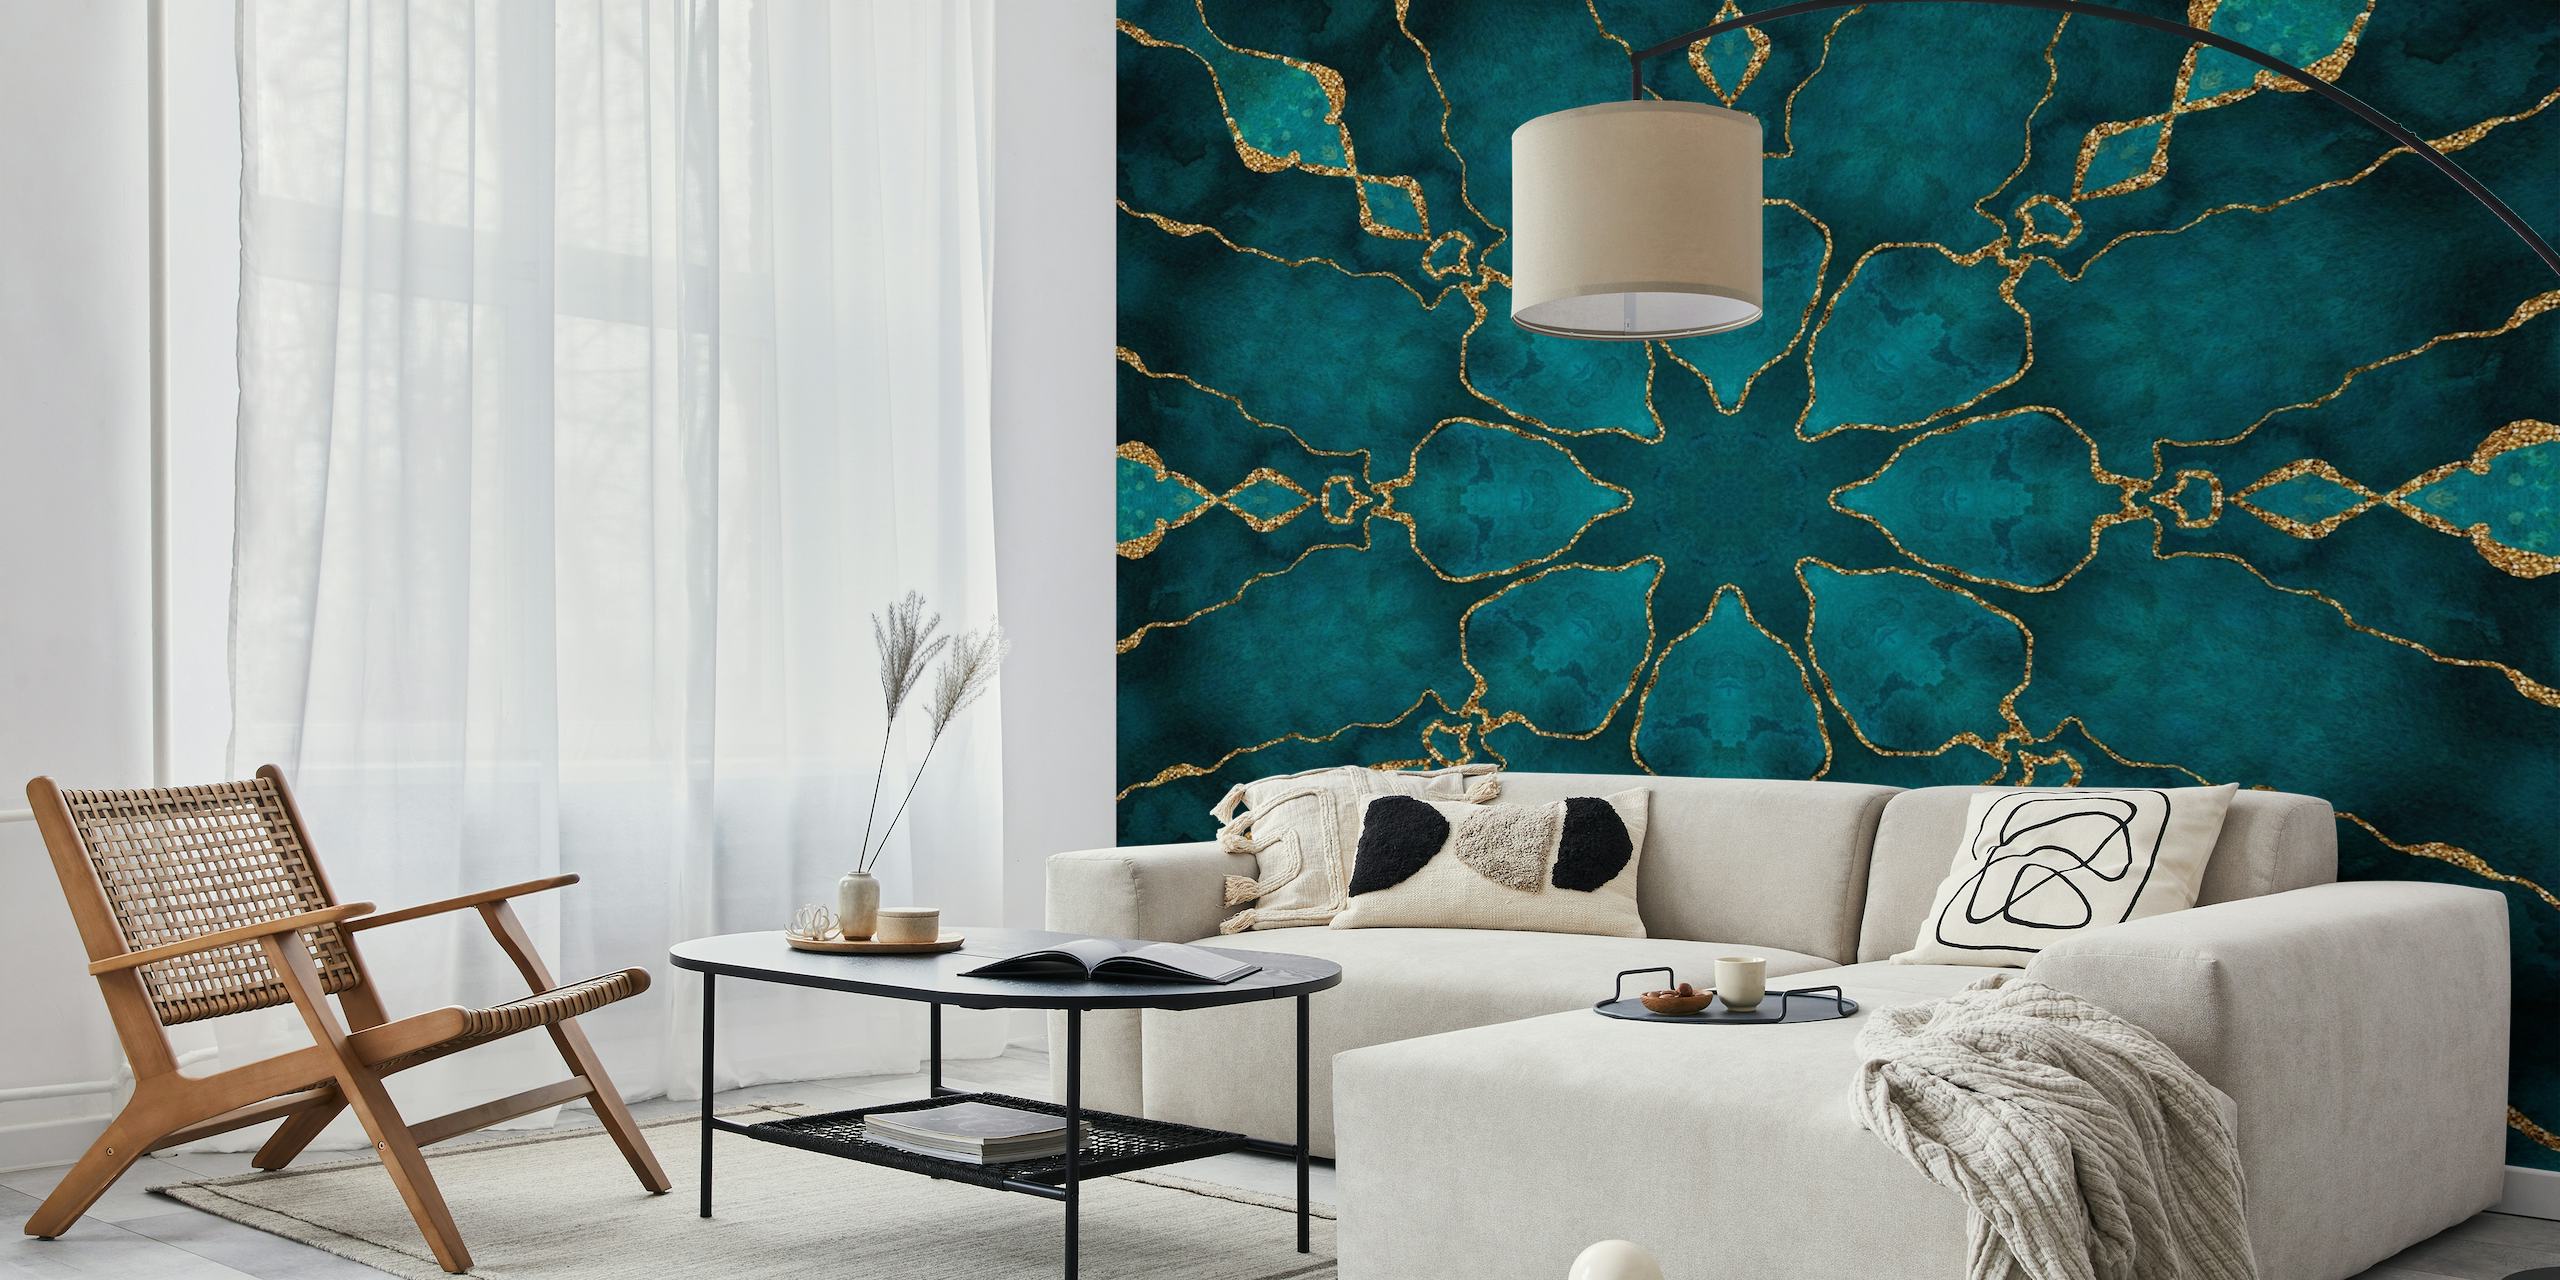 Mandala-vægmaleri i turkis og guld med indviklet mønsterdesign